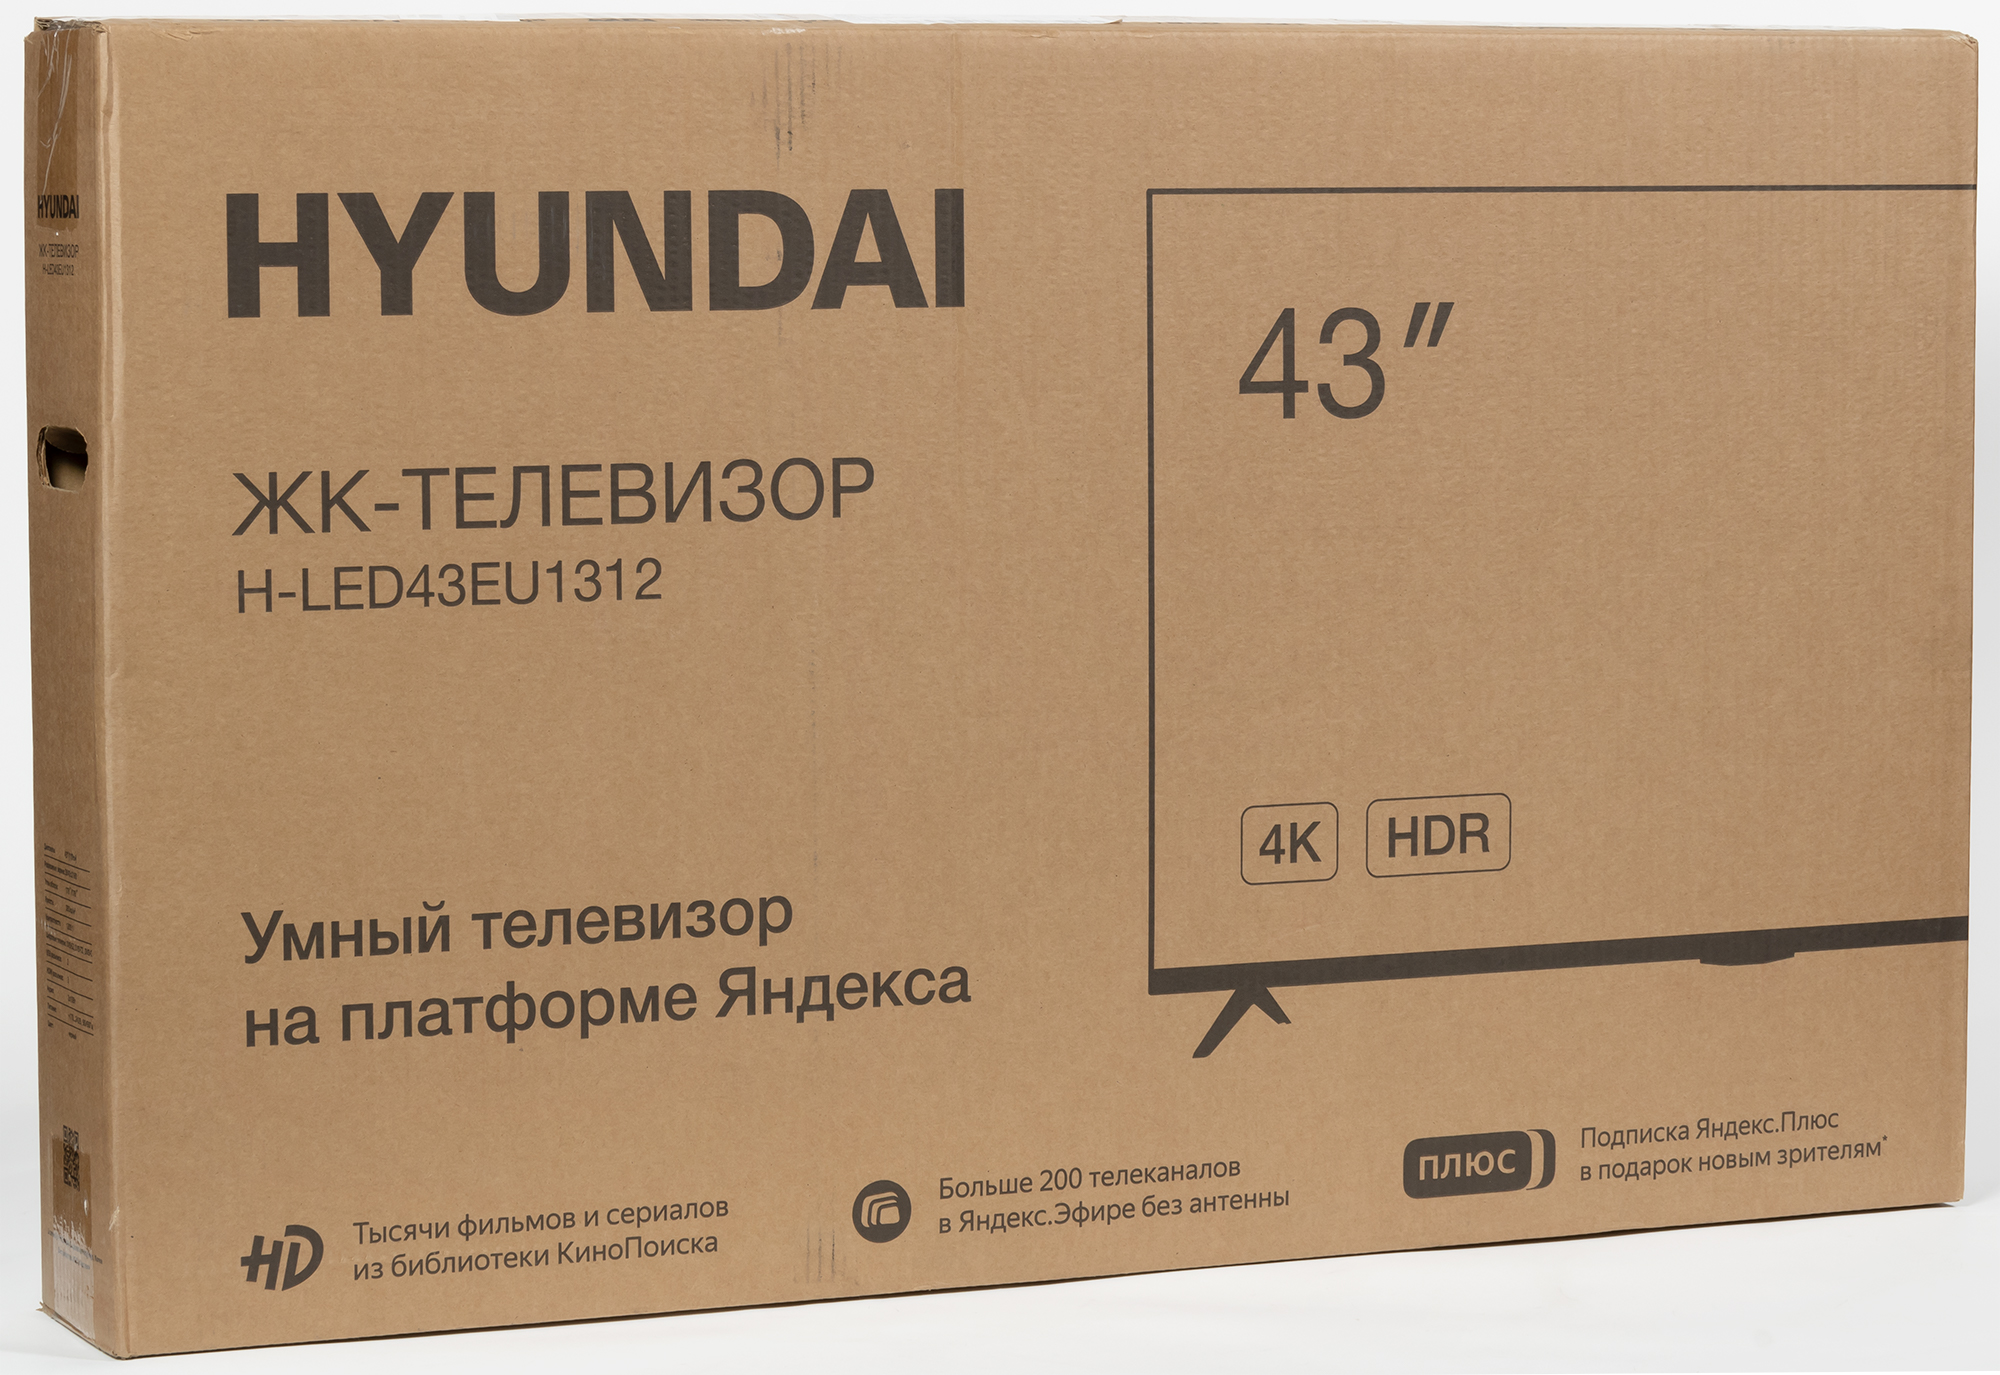 Led43bu7003 телевизор hyundai. Hyundai h-led43eu1312. Телевизор led Hyundai h led43eu1312. Телевизор Hyundai 43 серийный номер.